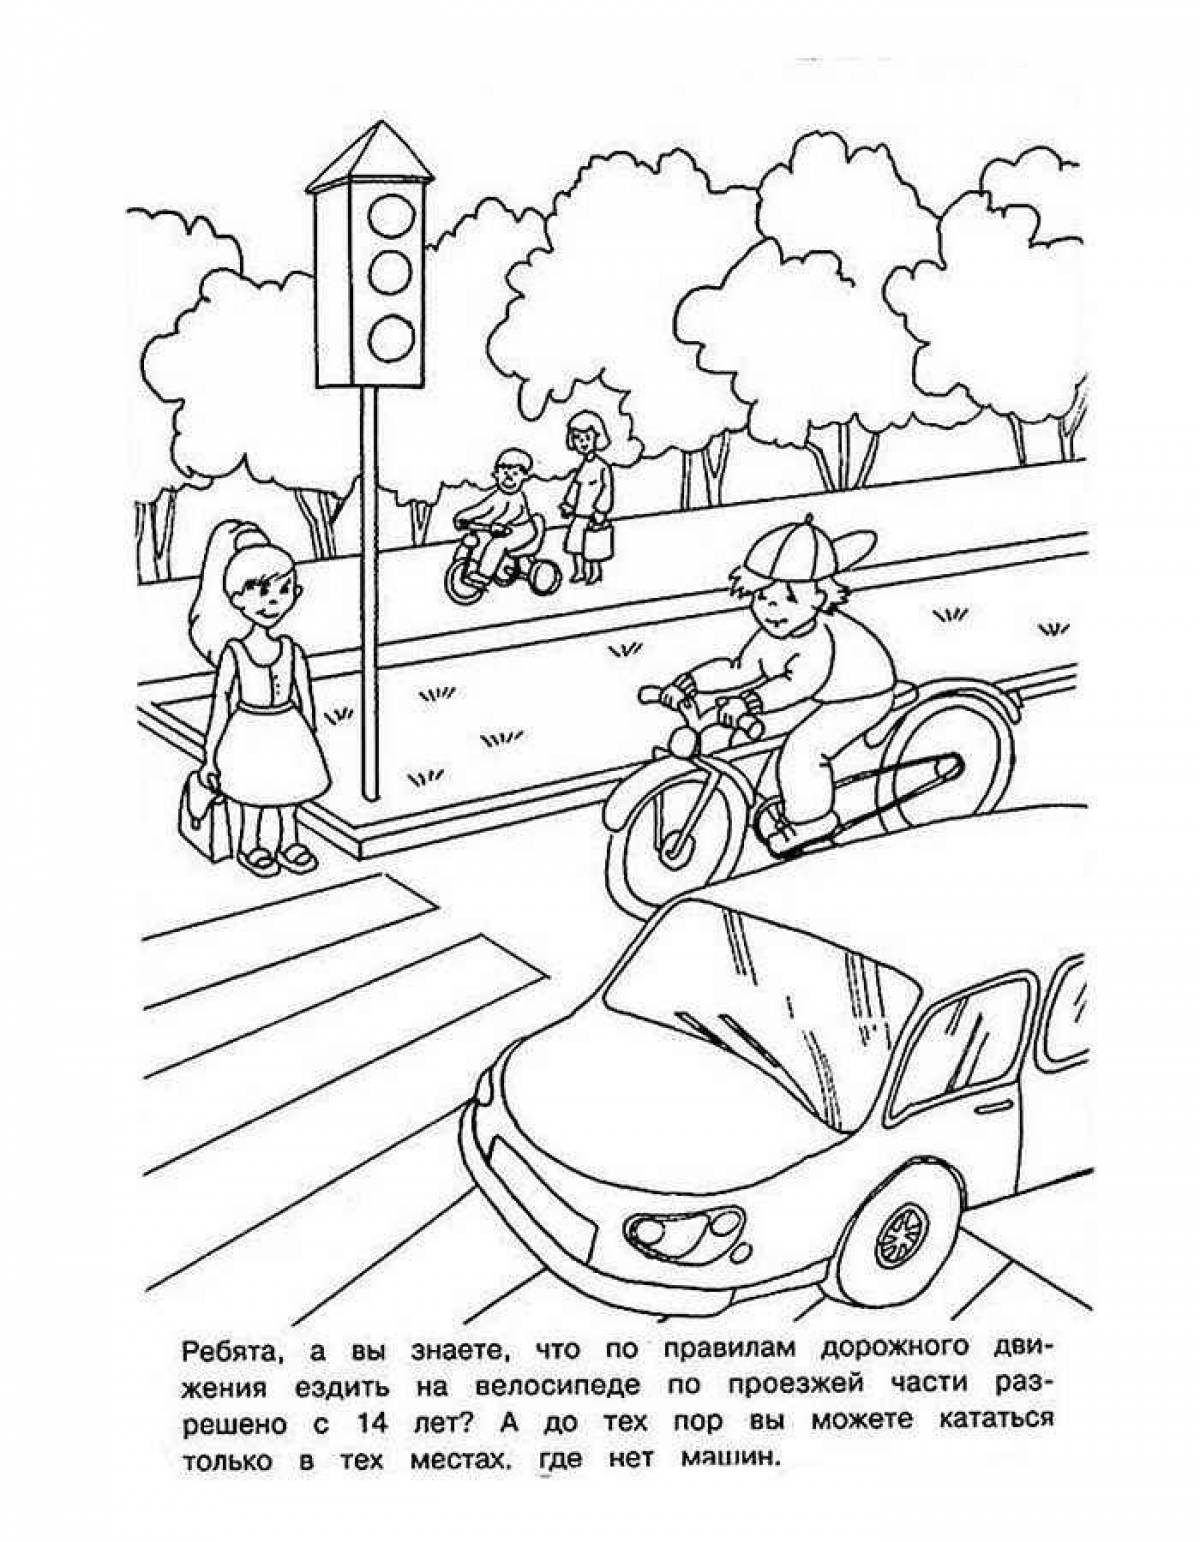 Traffic rules for schoolchildren #3